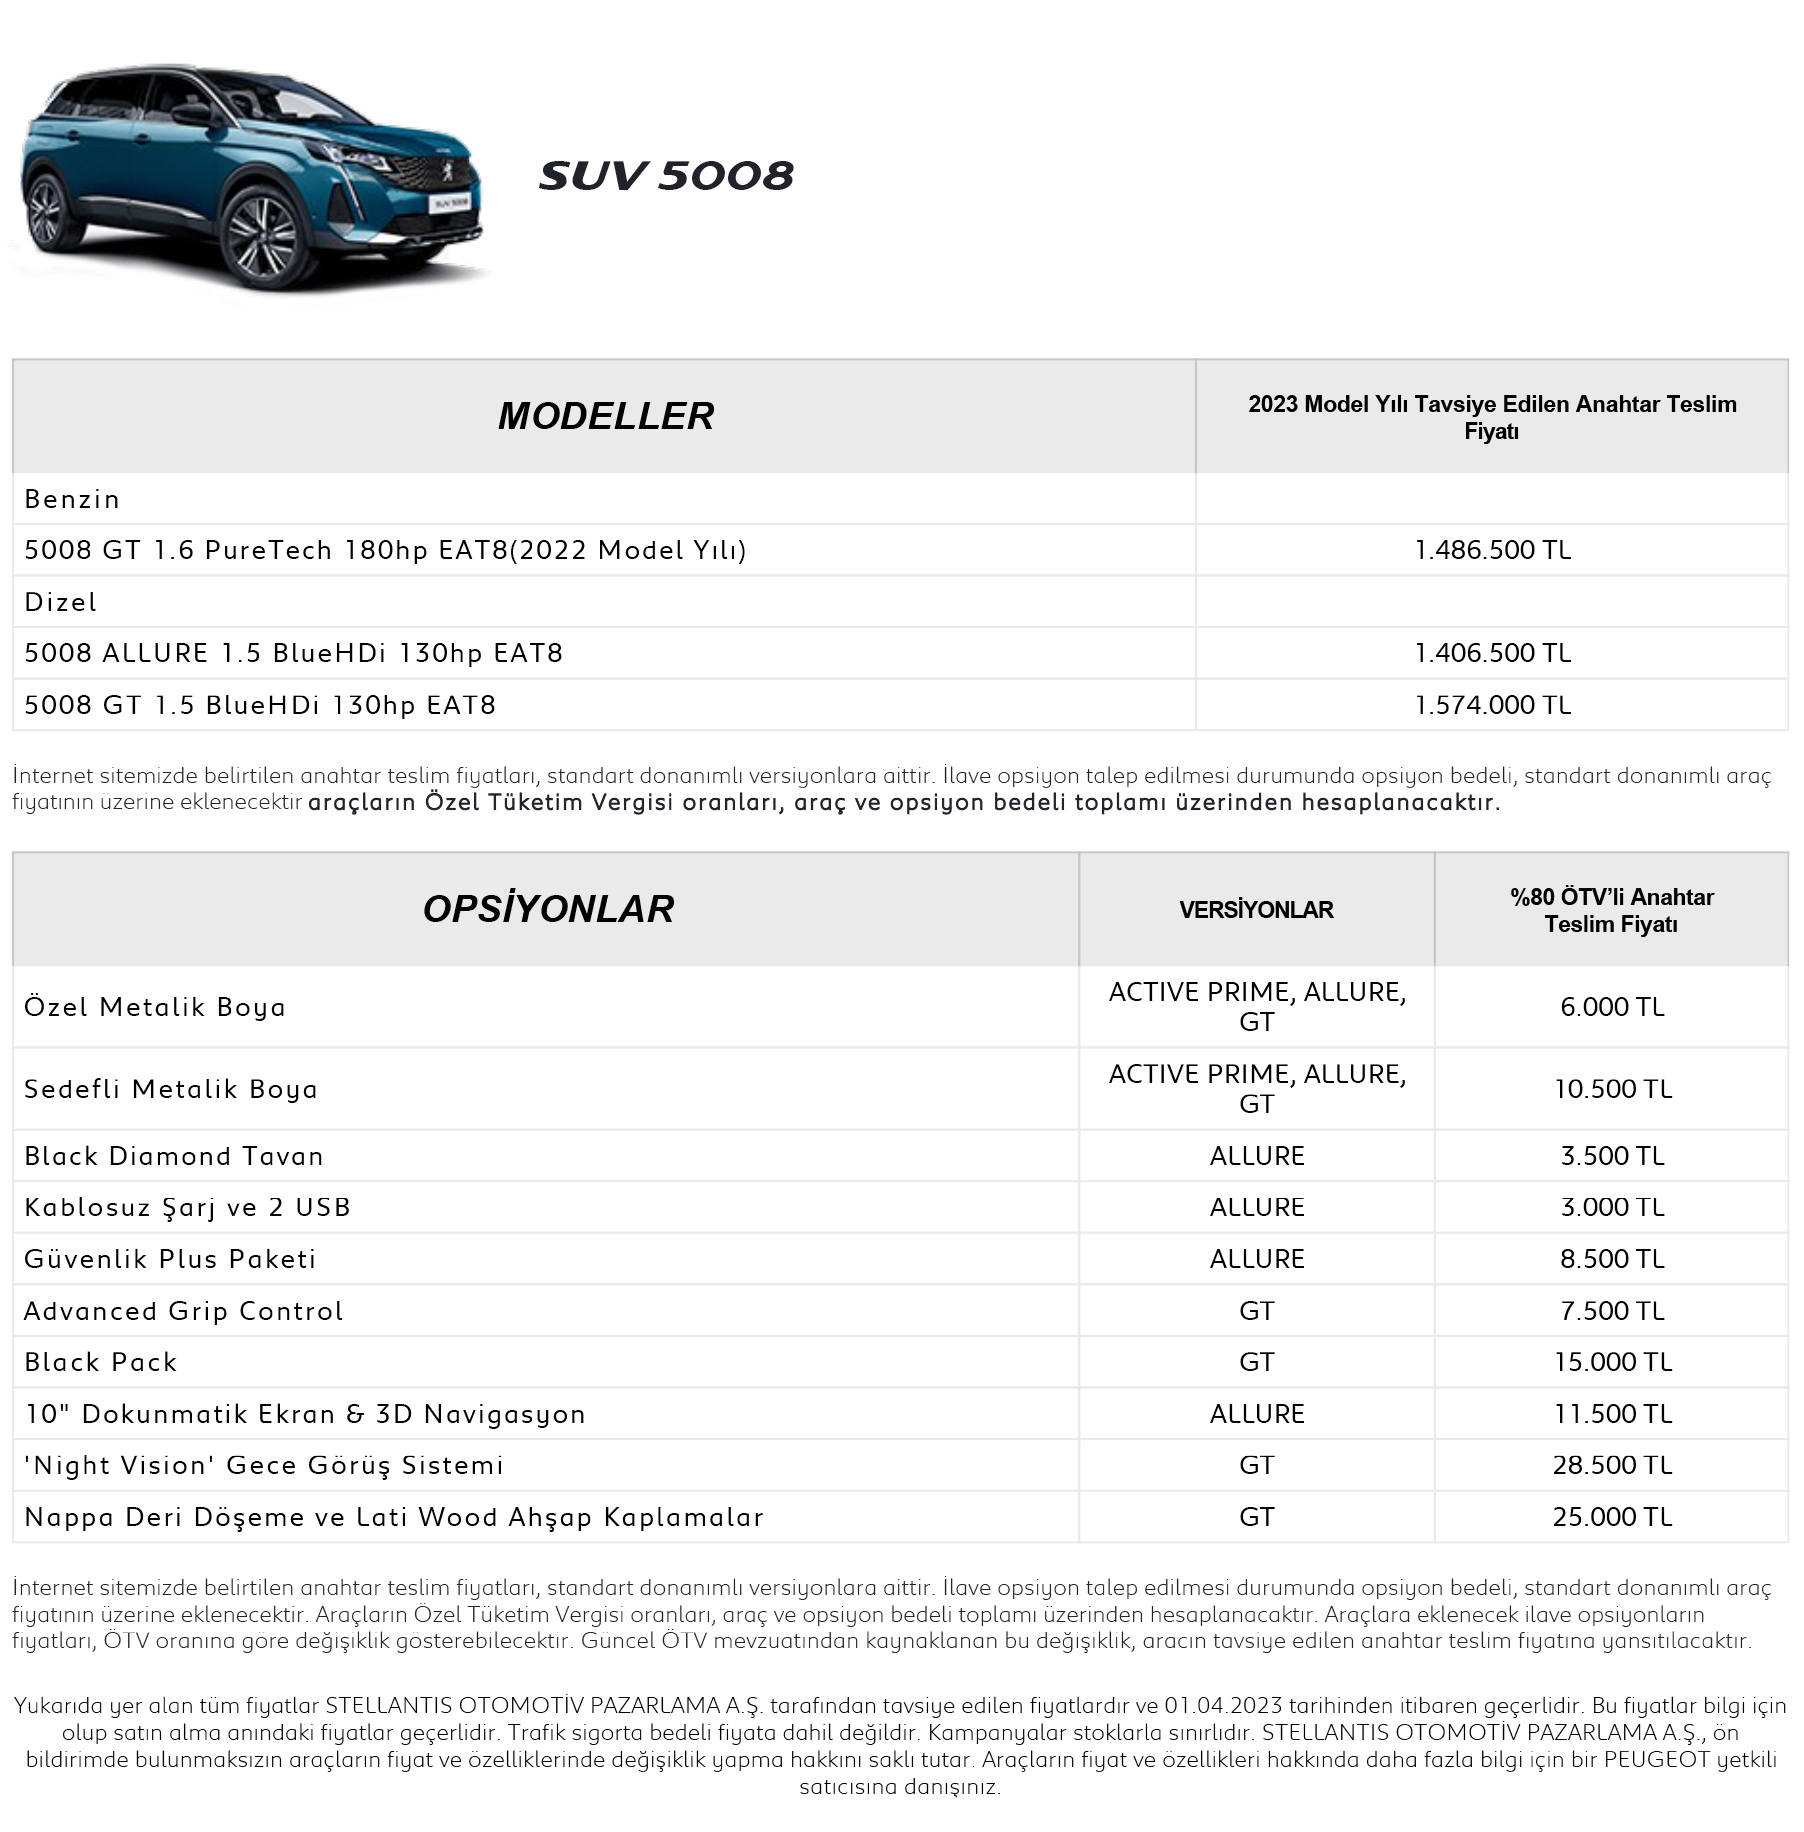 Peugeot SUV 5008 Price List